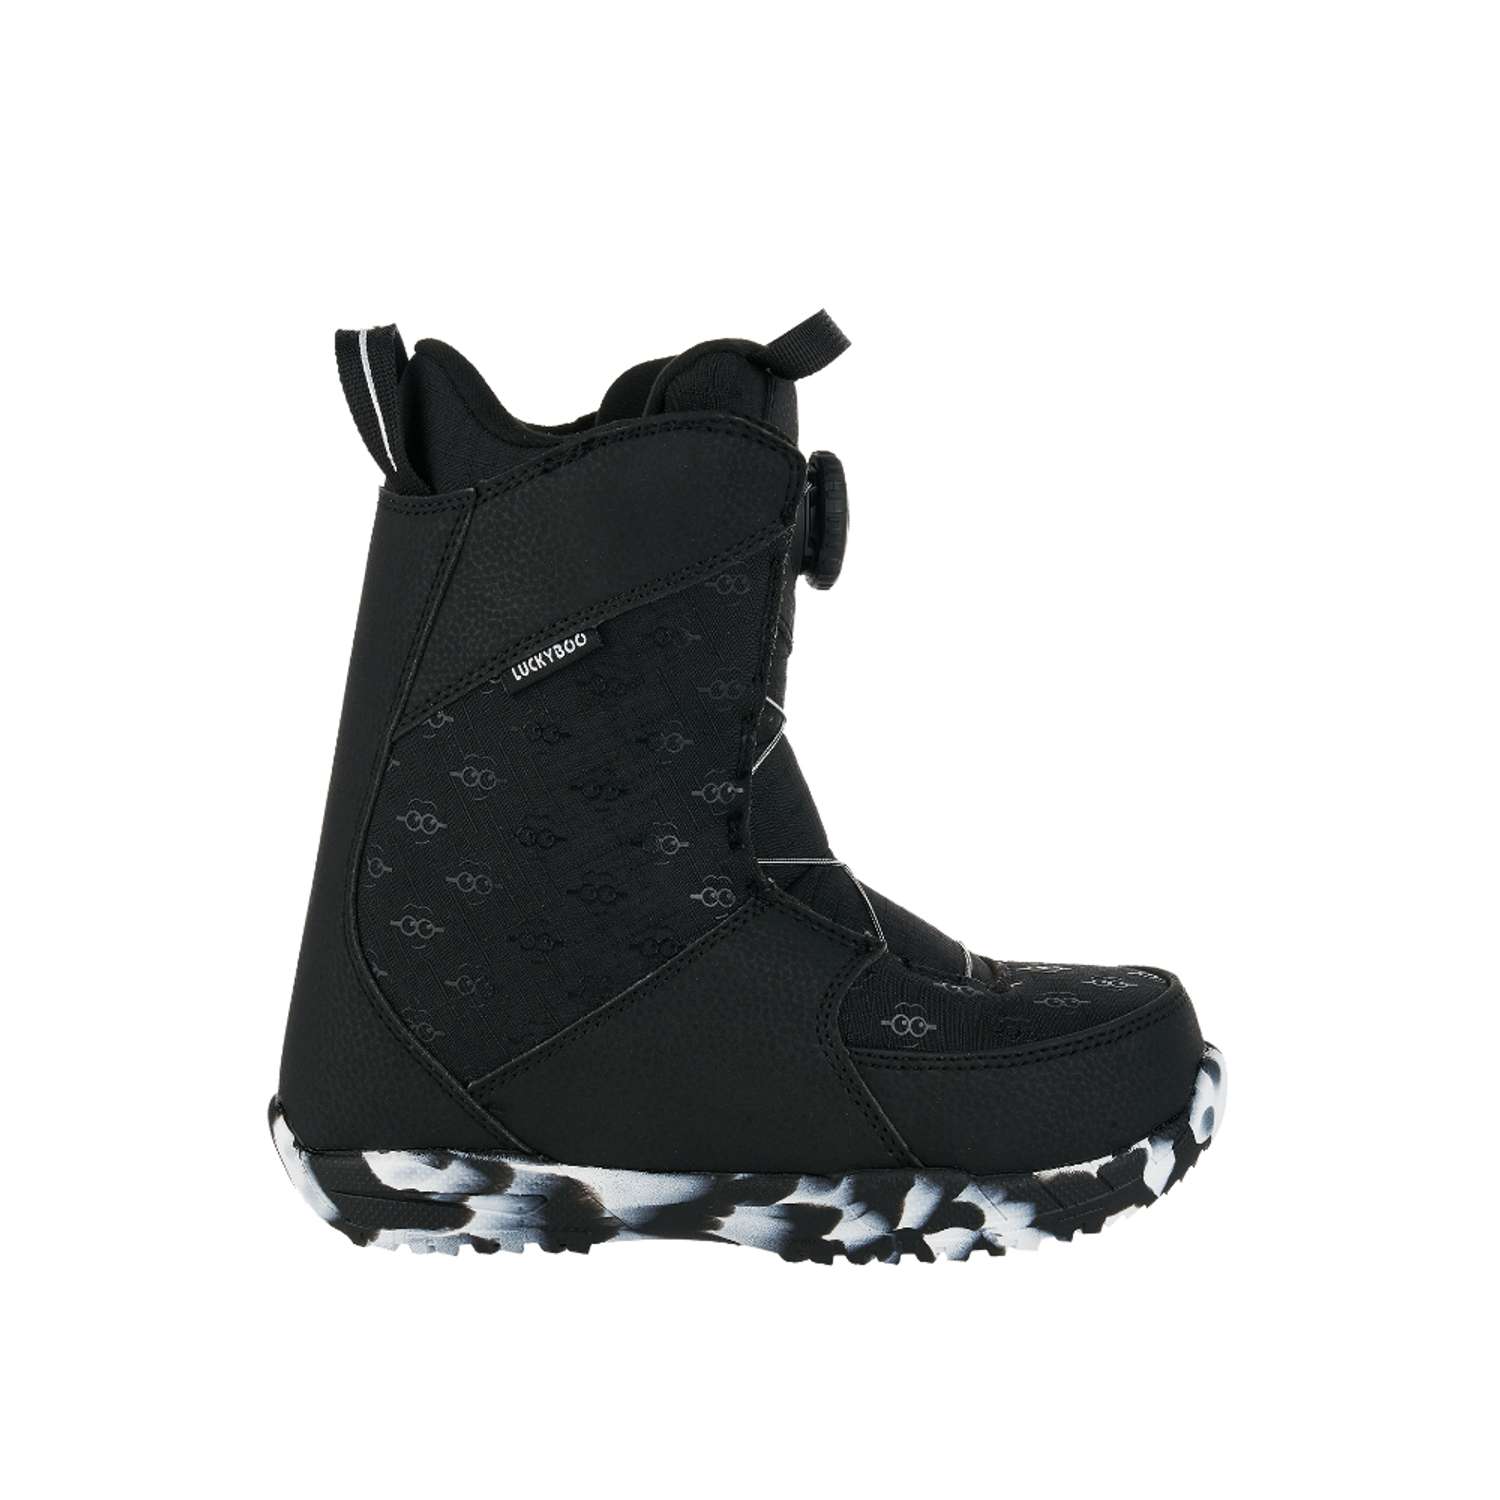 Ботинки для сноуборда Fastec Luckyboo 18cm - фото 2